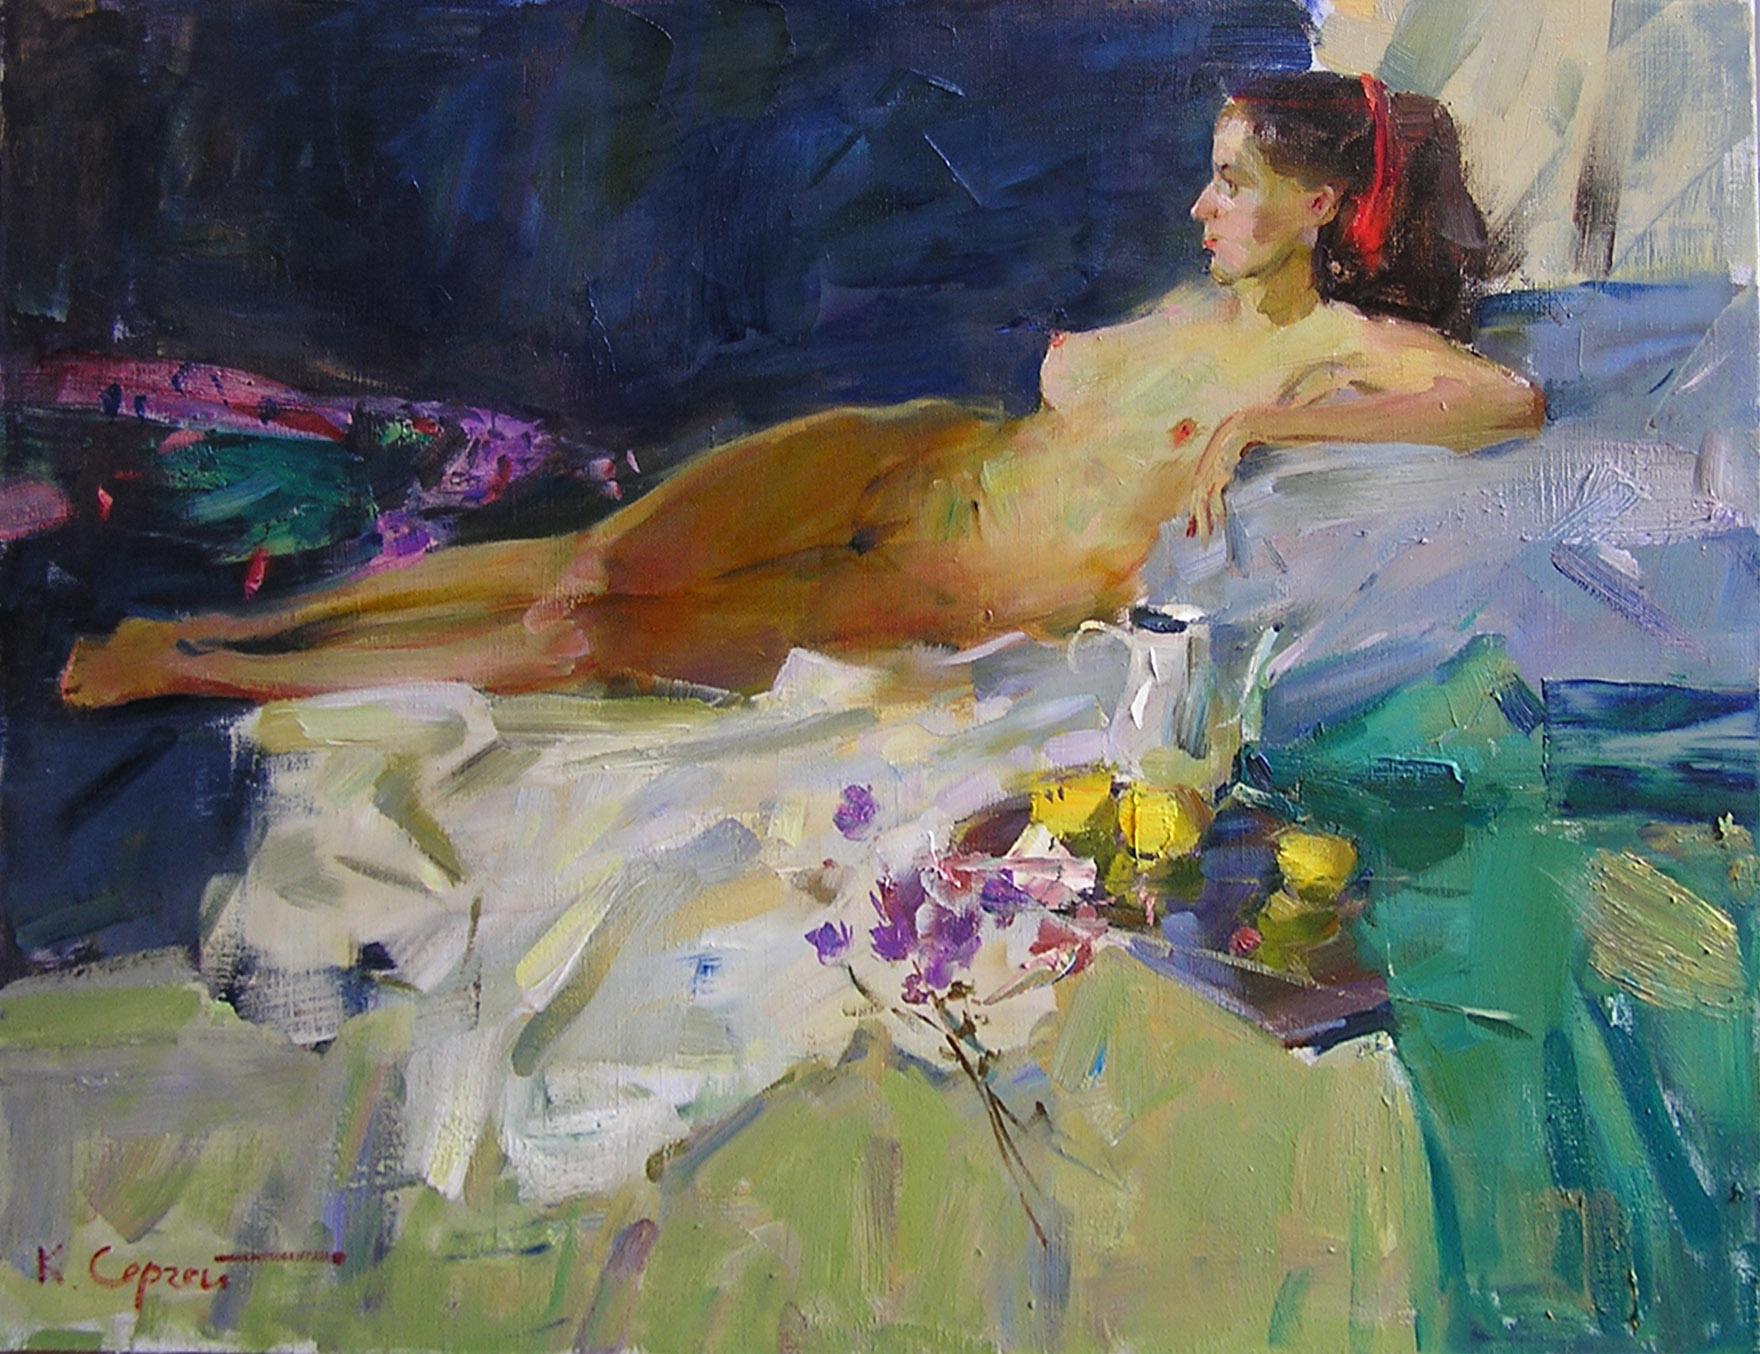 Sergei Kovalenko Nude Painting - Thinking